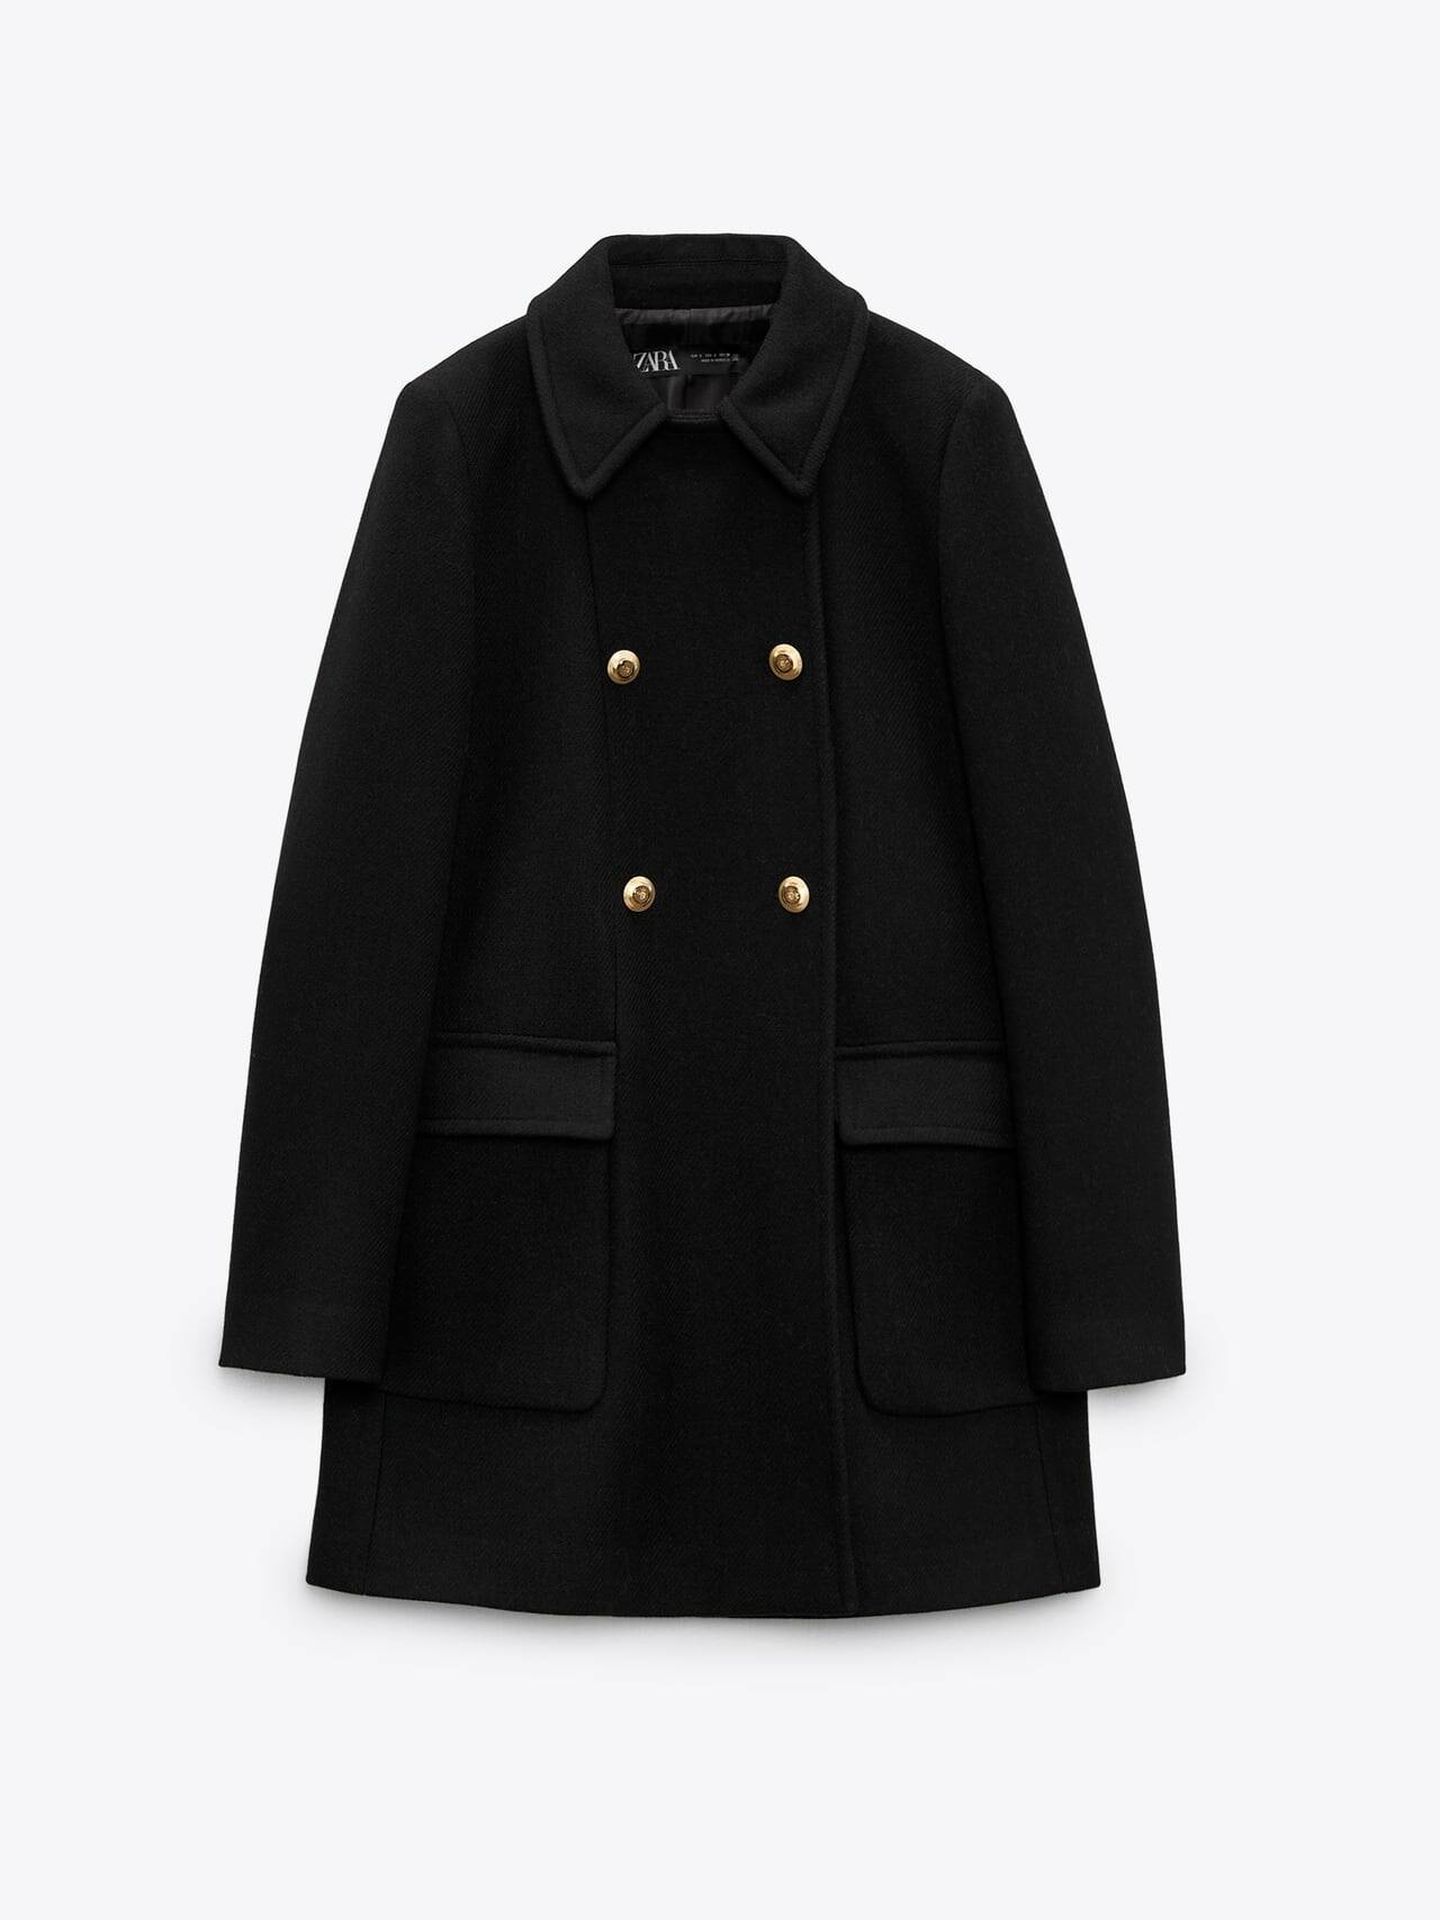 Abrigo negro de Zara. (Zara/Cortesía)